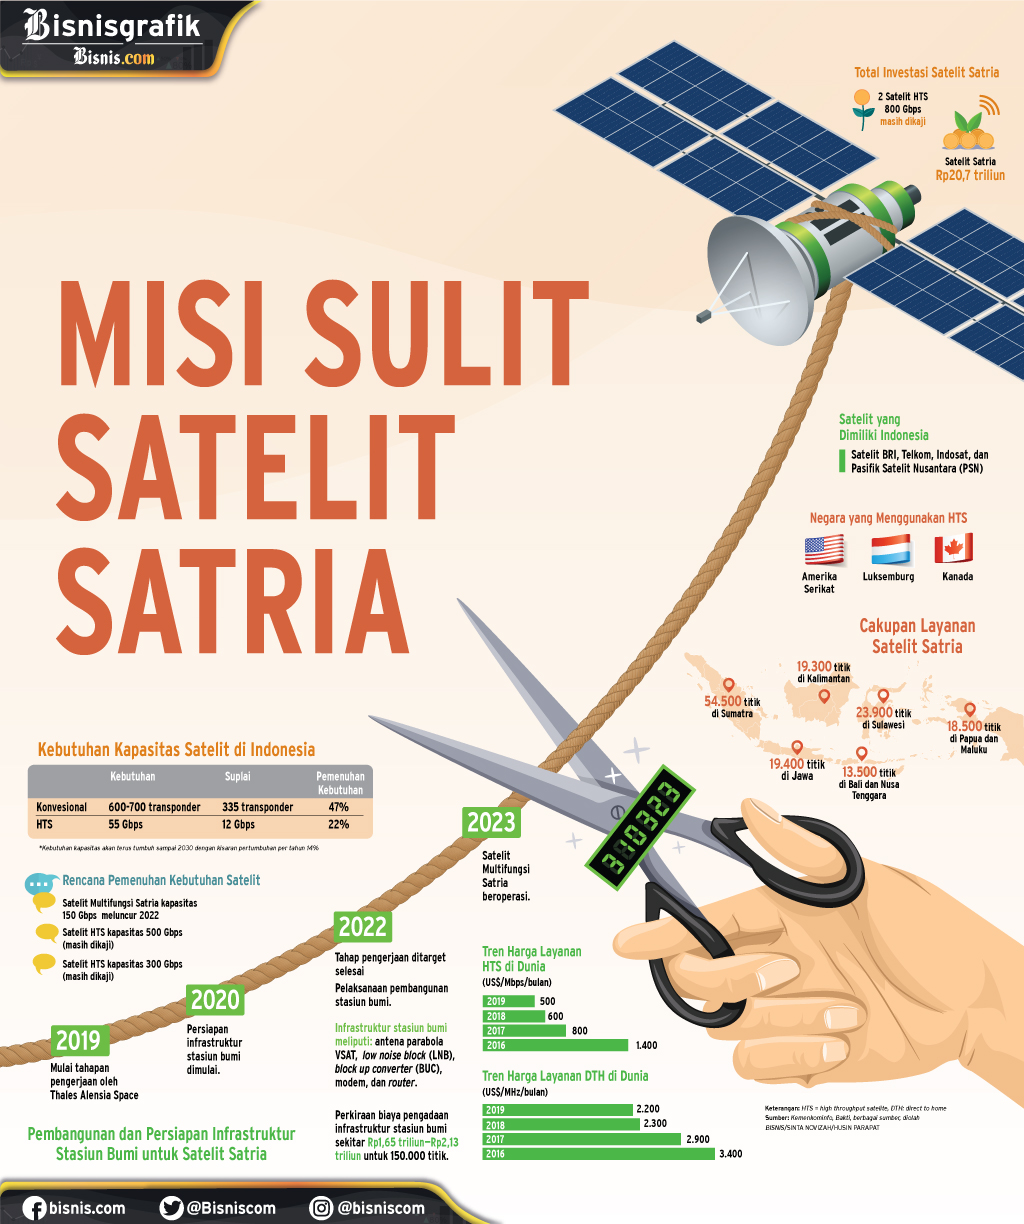 PEMENUHAN LAYANAN TELEKOMUNIKASI : Misi Sulit Satelit Satria